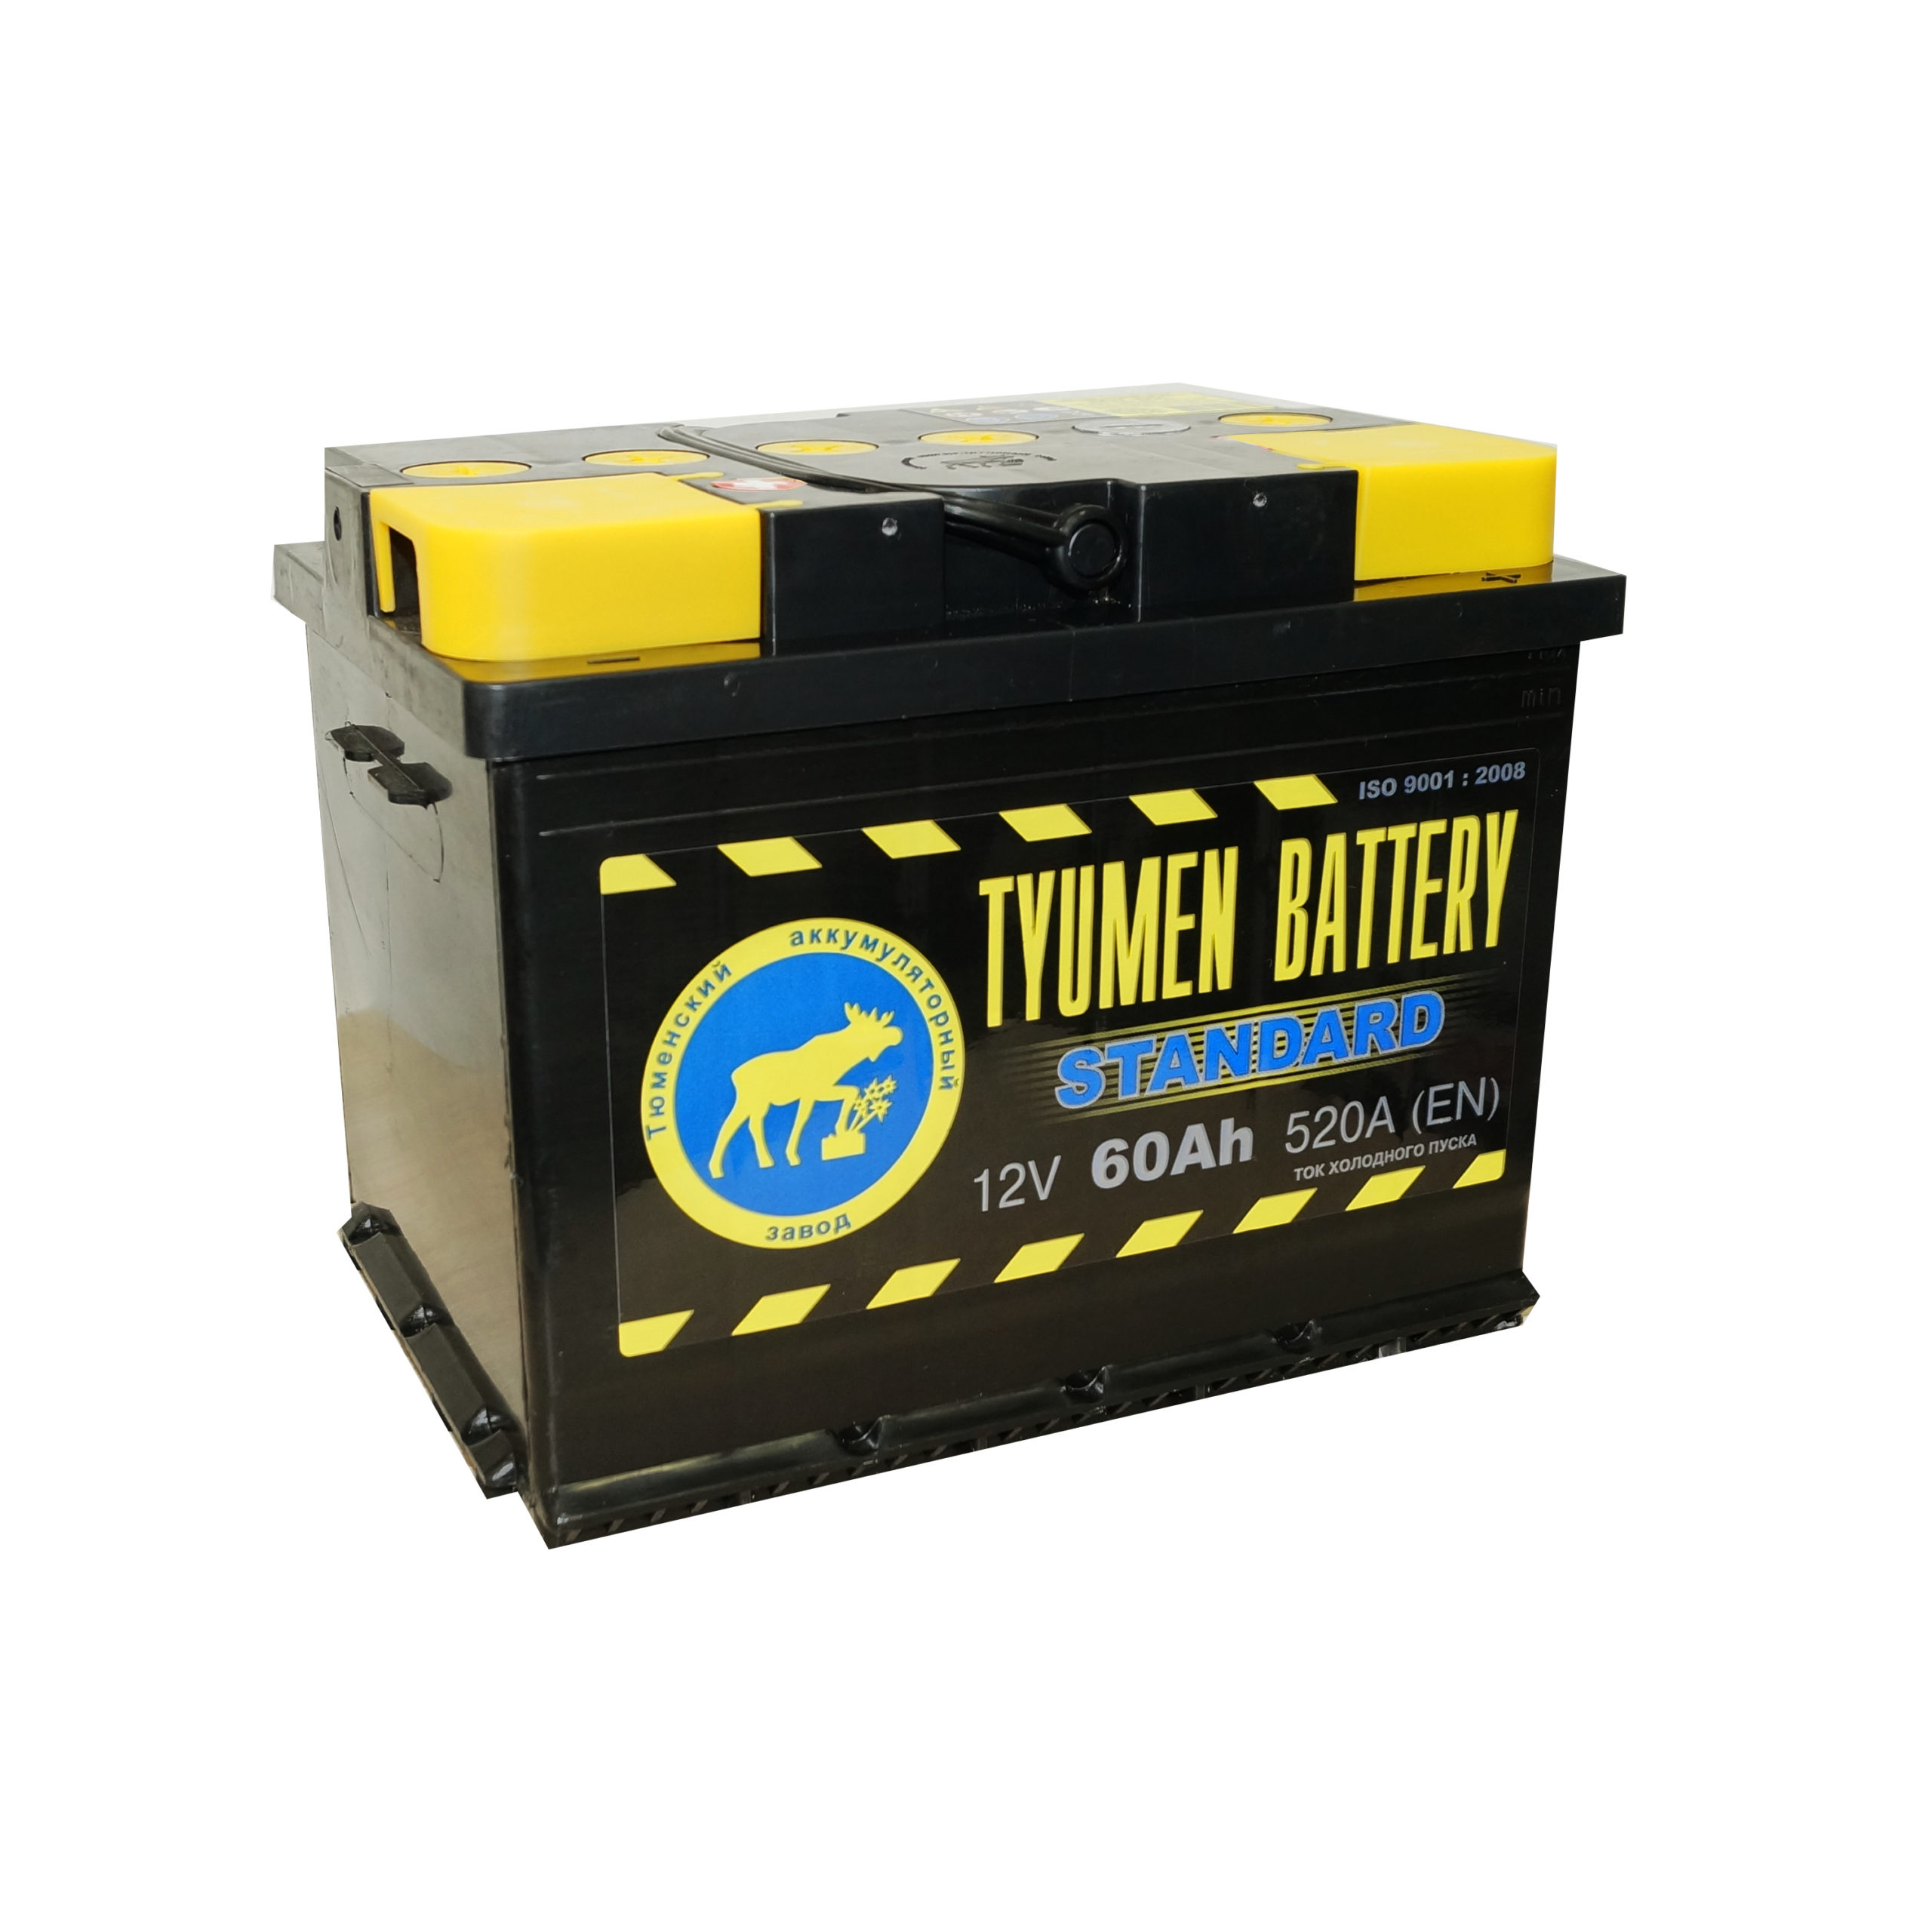 Тюмень стандарт. Tyumen Battery Standard 6ст-60l п.п.. АКБ 6ст-60l Tyumen Battery Standard. Тюмень аккумулятор 62 Ач. Аккумуляторная батарея Tyumen Battery 6ст-60l Standard.